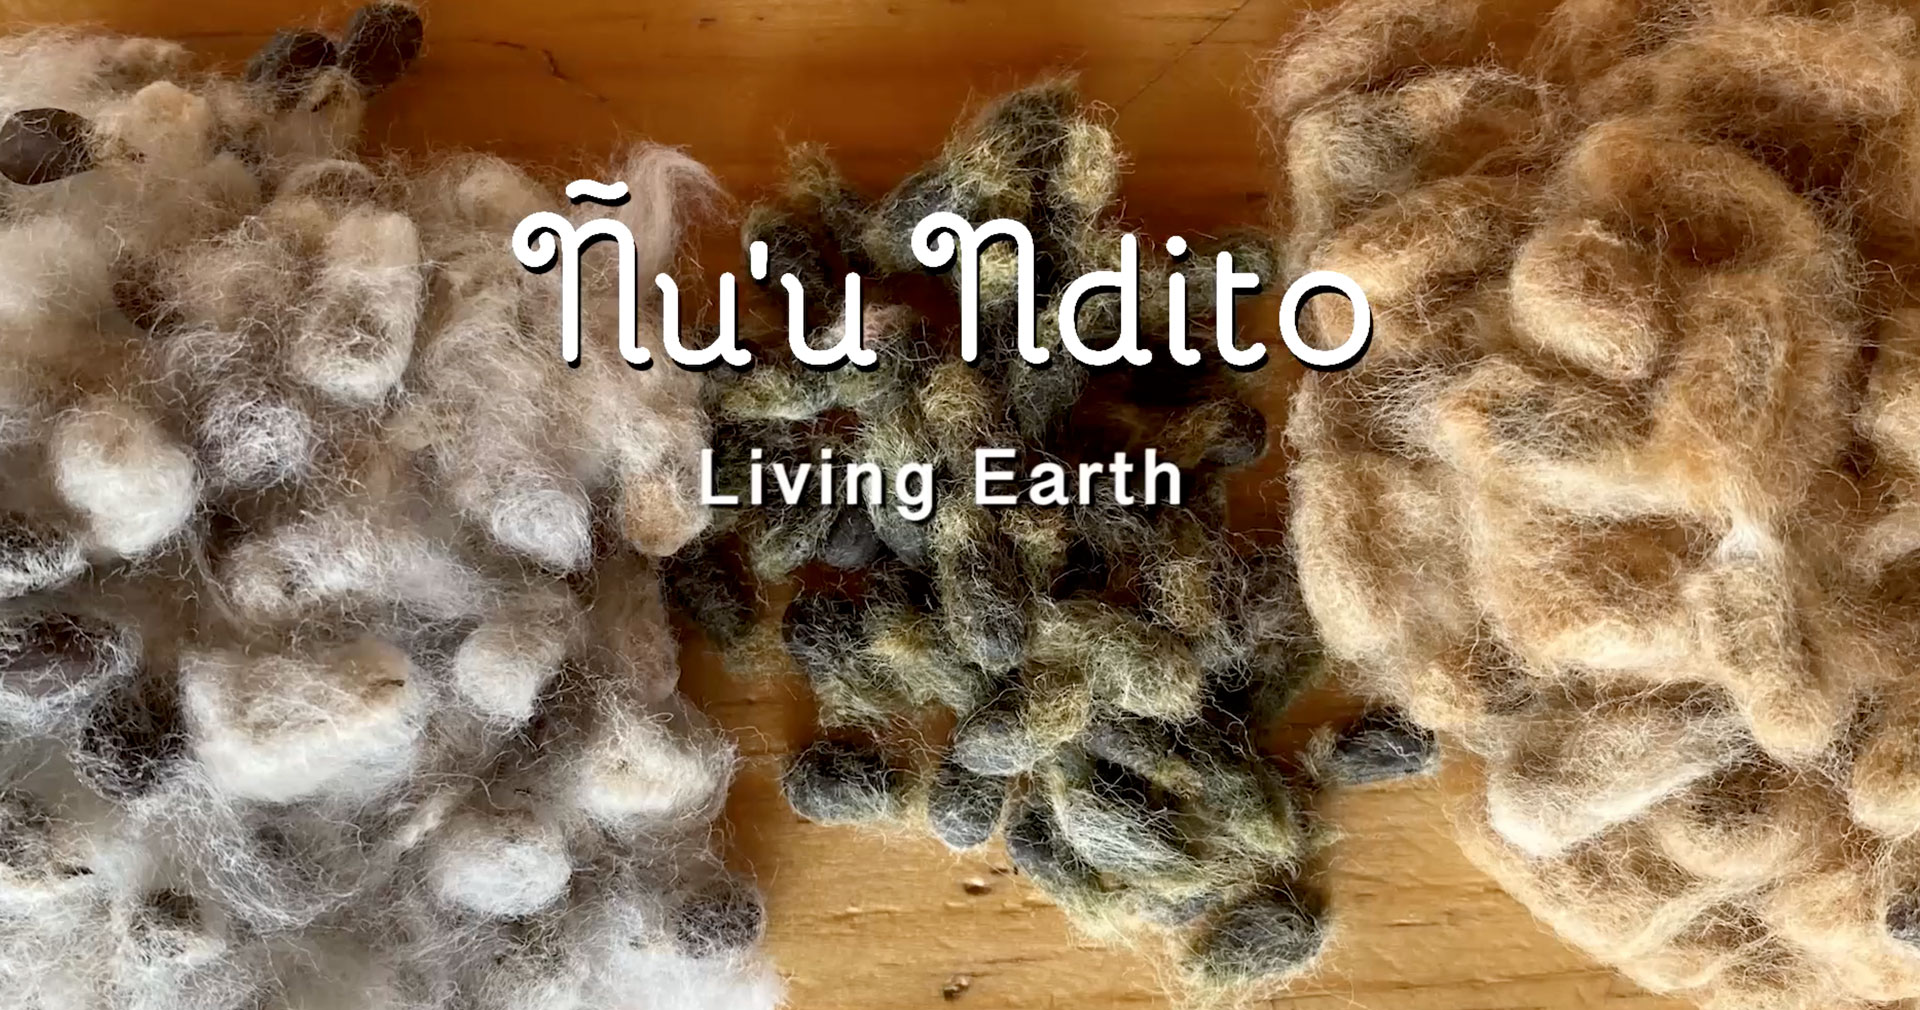 Ñu'u Ndito-Living Earth español